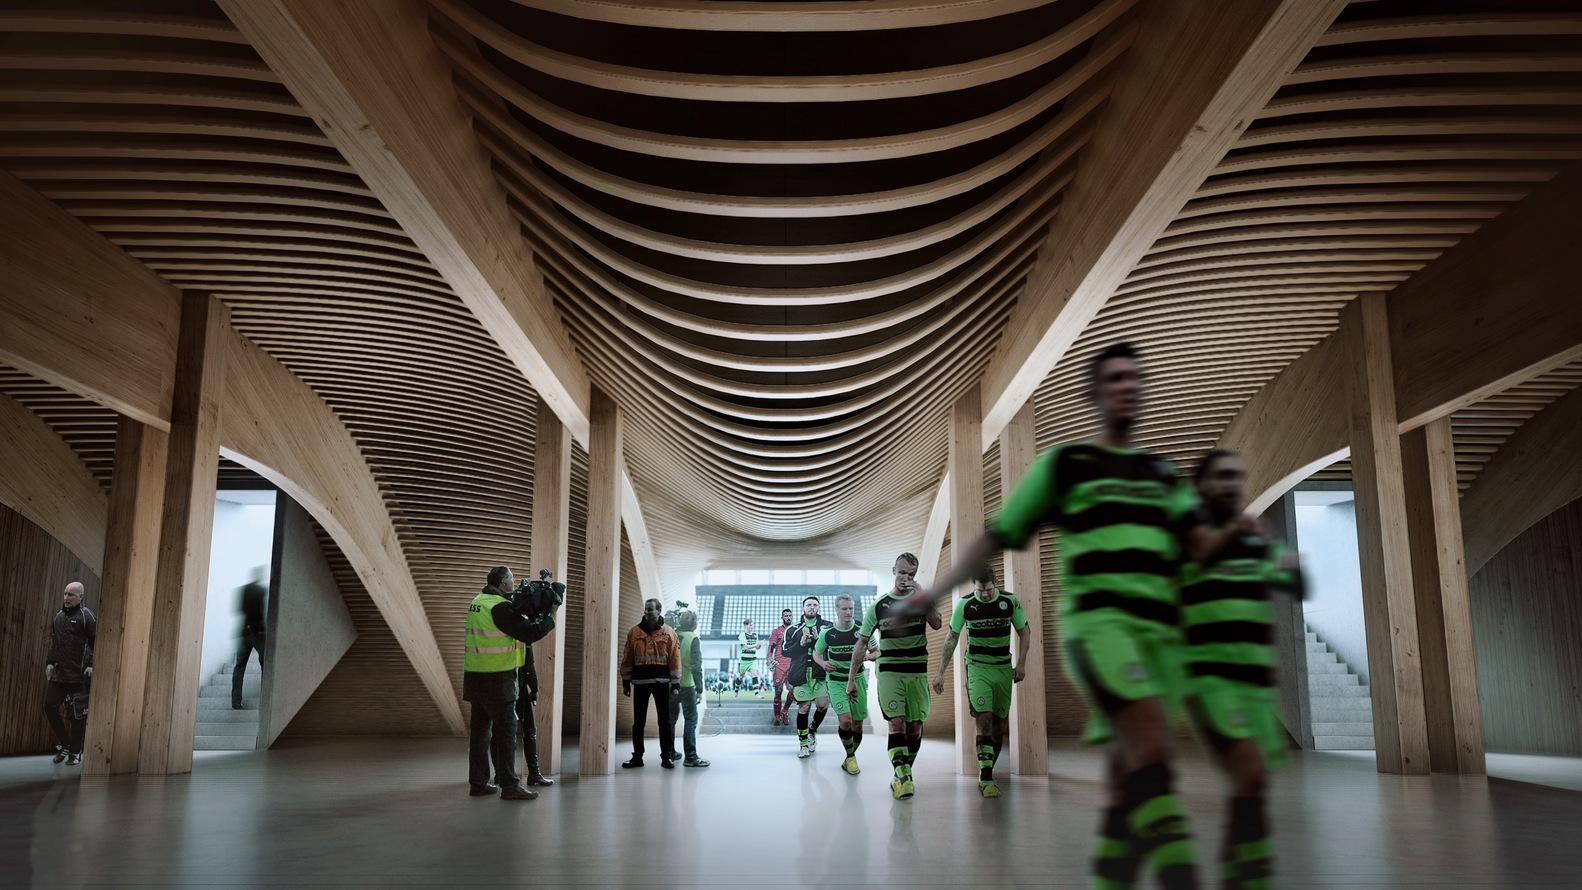 zaha hadid estadio sostenible La firma de Zaha Hadid diseña el primer estadio de fútbol sostenible y verde del mundo